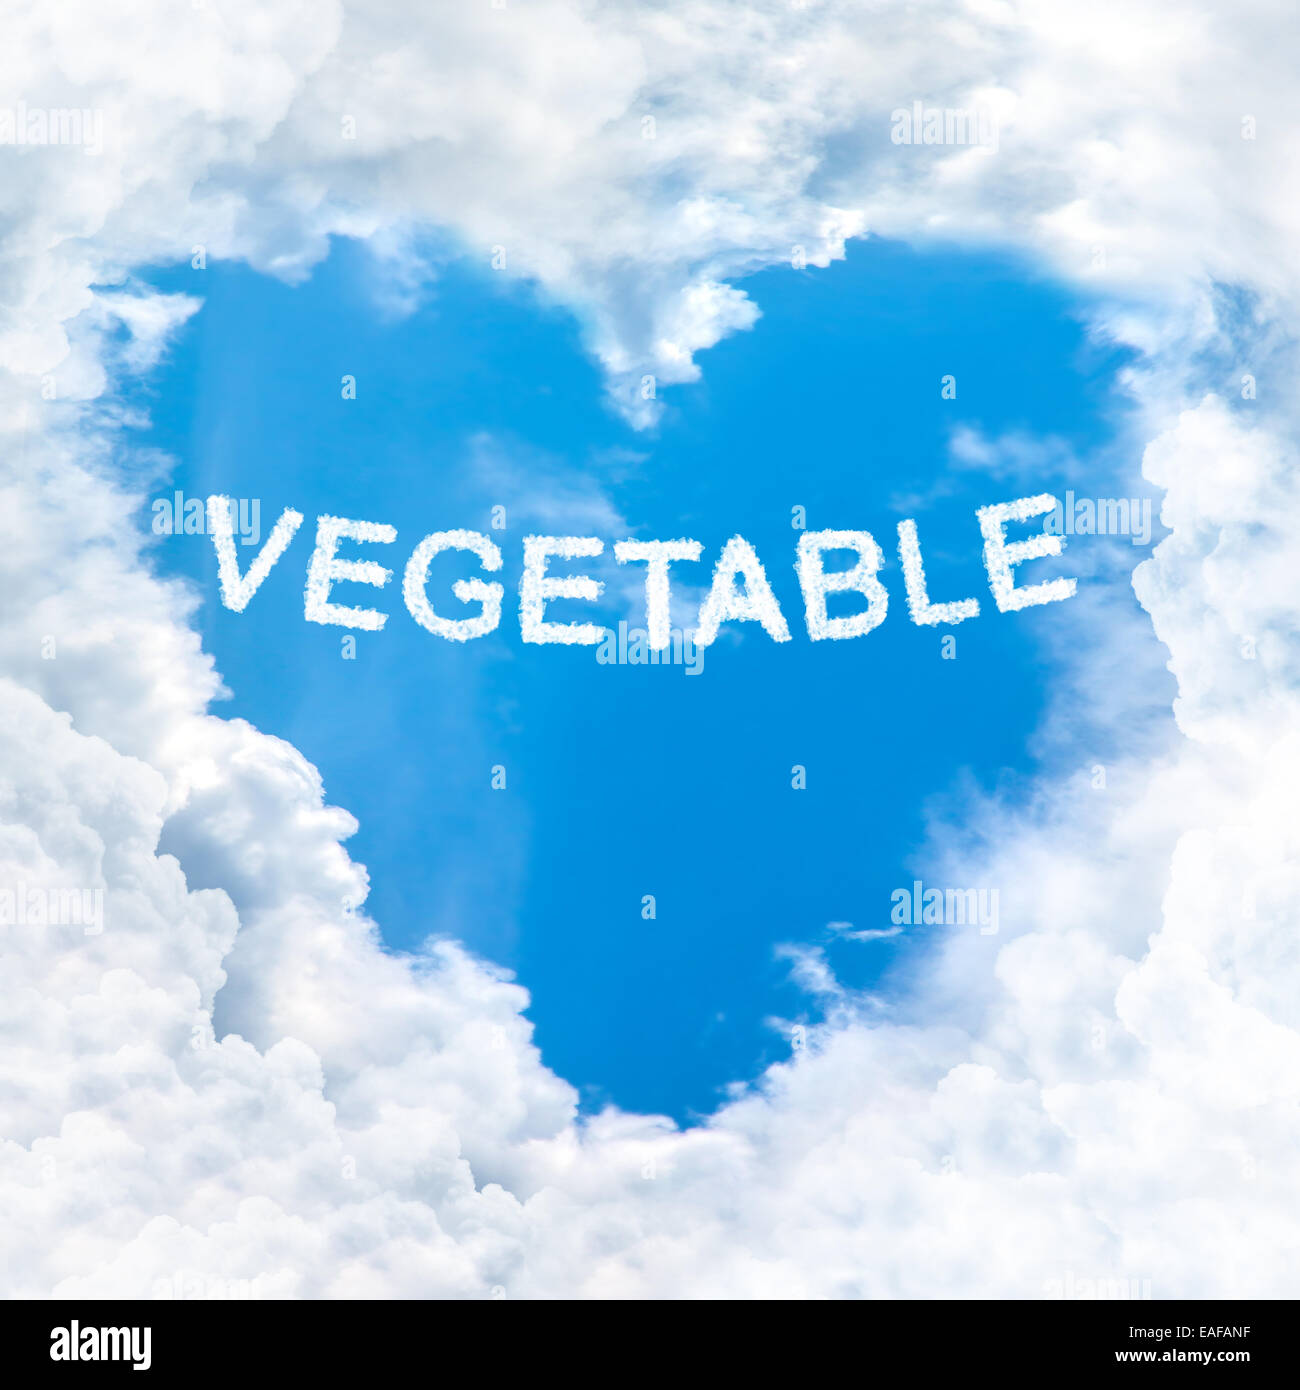 Parola di vegetali all'interno di amore il cloud forma di cuore blue sky solo in background Foto Stock